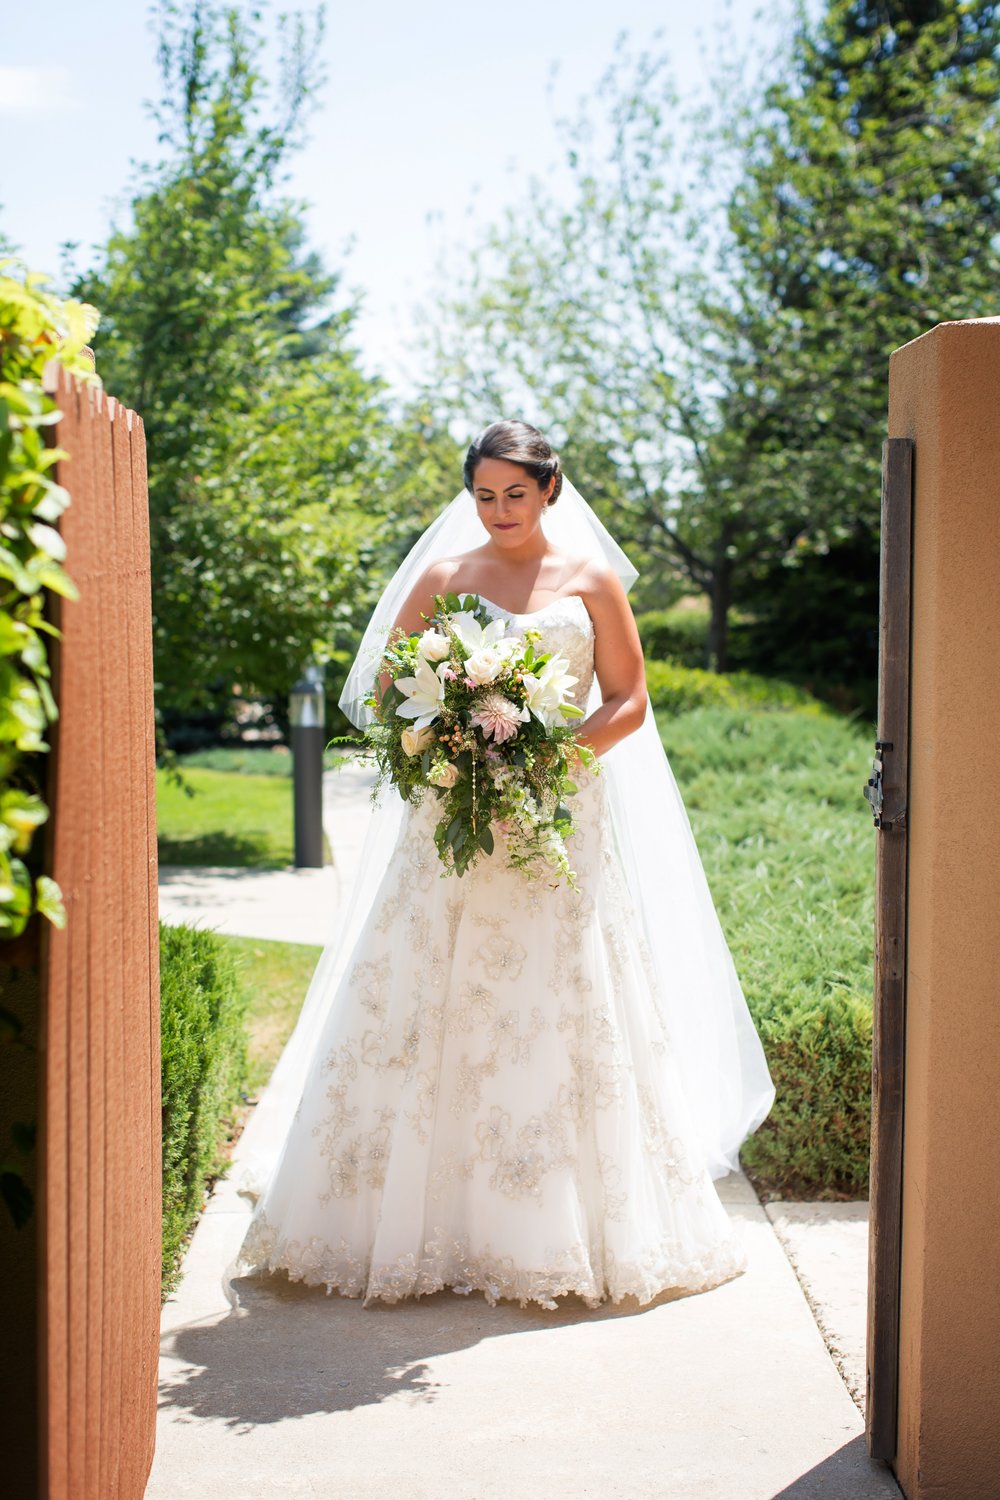 Our Brilliant Bride Natalie | Longmont, Colorado Summer Wedding. Desktop Image